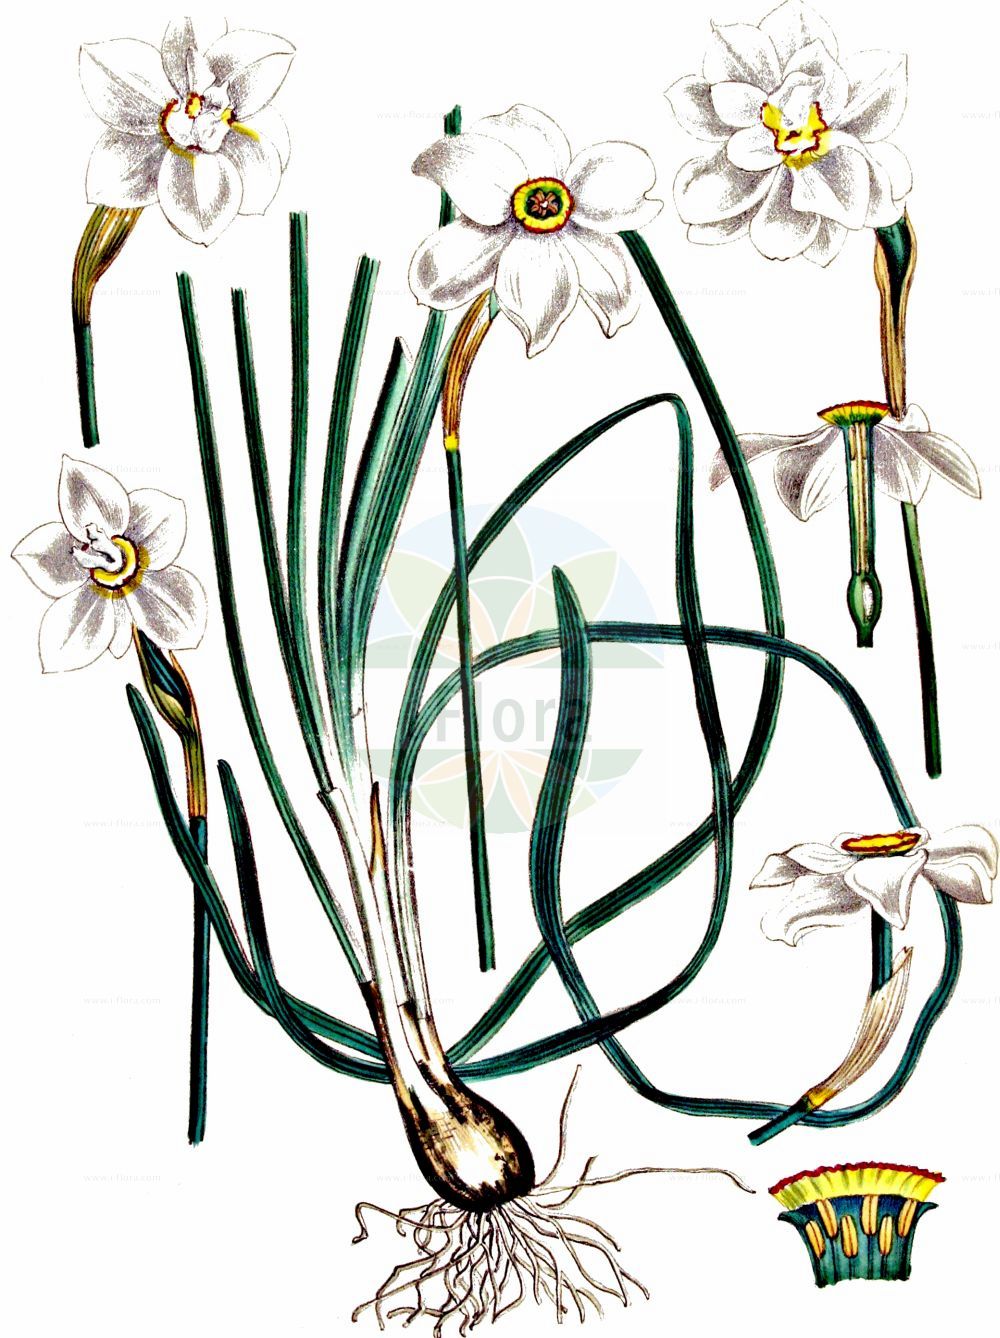 Historische Abbildung von Narcissus poeticus (Garten-Narzisse - Pheasant's-eye Daffodil). Das Bild zeigt Blatt, Bluete, Frucht und Same. ---- Historical Drawing of Narcissus poeticus (Garten-Narzisse - Pheasant's-eye Daffodil). The image is showing leaf, flower, fruit and seed.(Narcissus poeticus,Garten-Narzisse,Pheasant's-eye Daffodil,Autogenes poeticus,Narcissus poeticus,Garten-Narzisse,Weisse Narzisse,Pheasant's-eye Daffodil,Daffodil,Pheasant's Eye Narcissus,Poet's Narcissus,White Daffodil,Narcissus,Narzisse,Daffodils,Amaryllidaceae,Narzissengewächse,Amaryllis family,Blatt,Bluete,Frucht,Same,leaf,flower,fruit,seed,Kops (1800-1934))